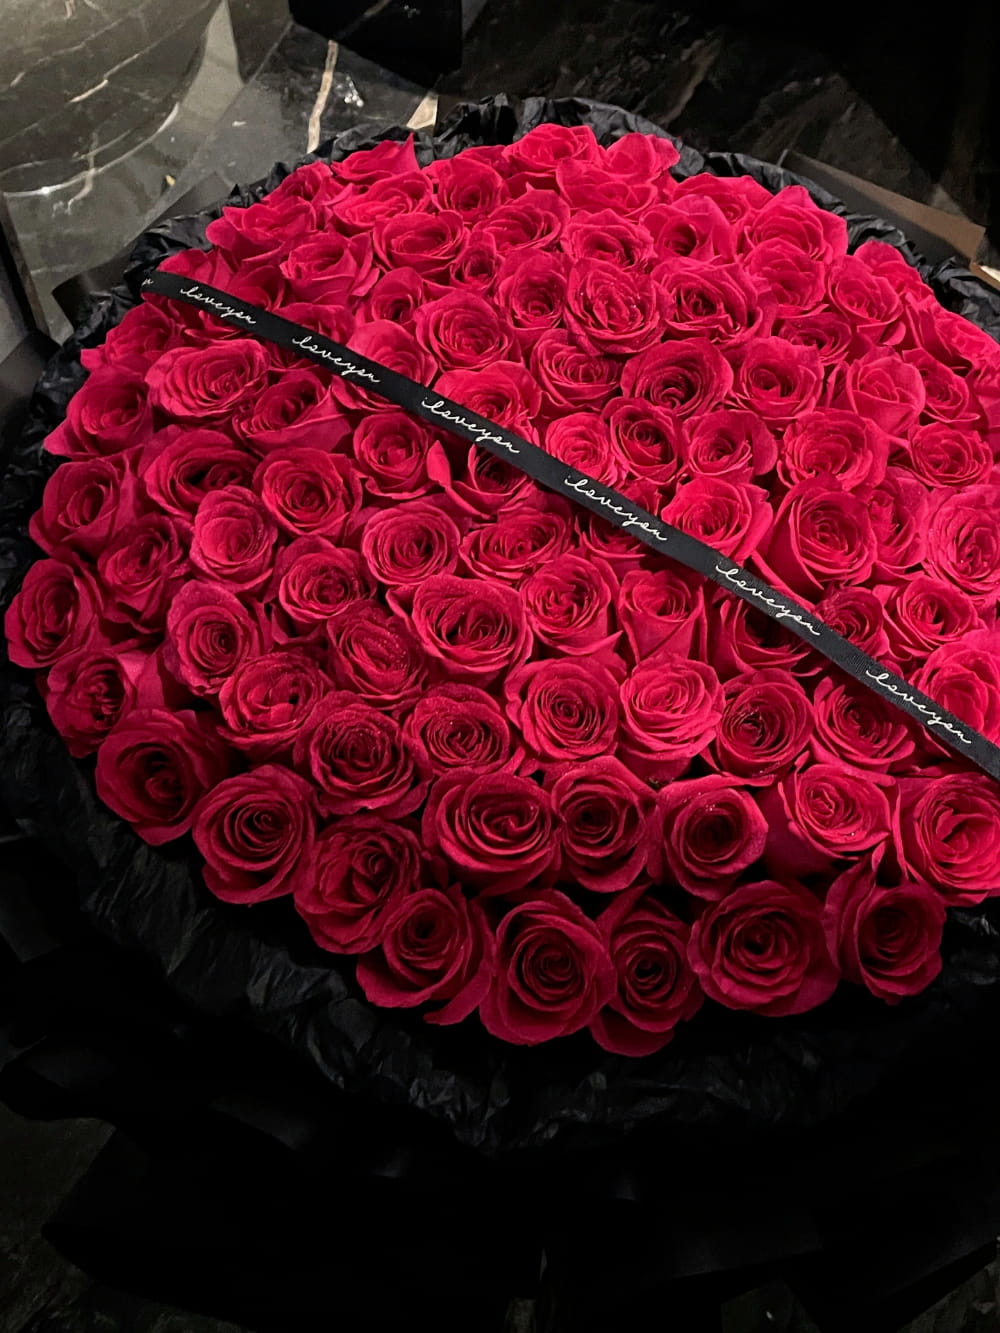 99朵玫瑰花图片,最美玫瑰花图片分享_6